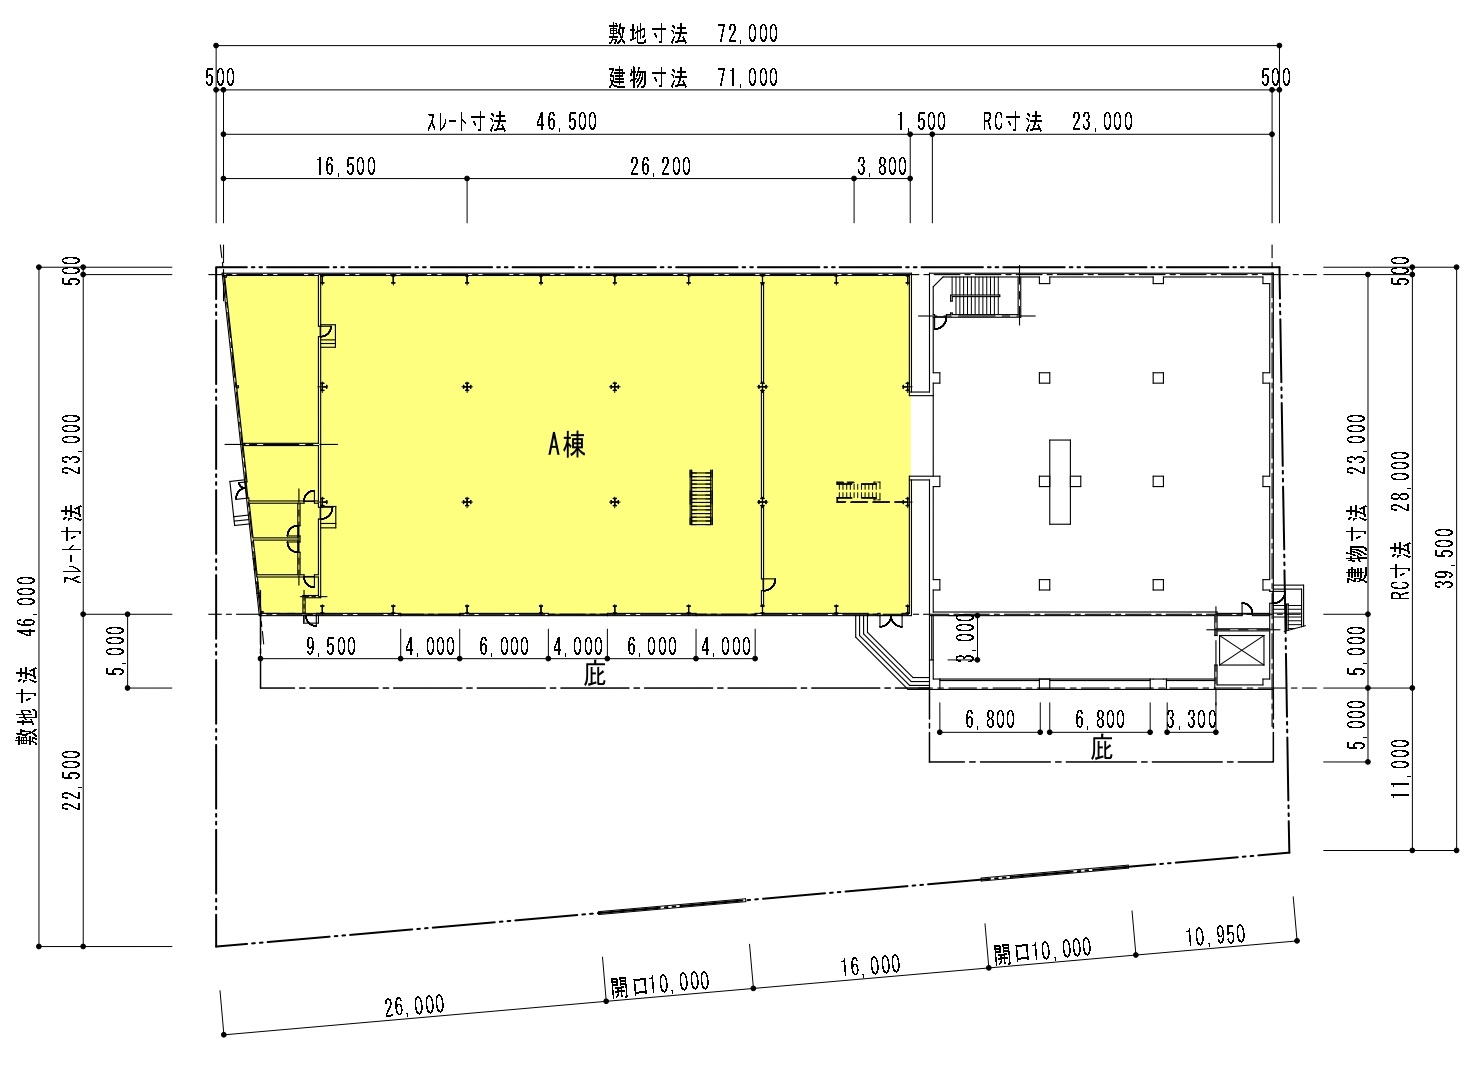 福岡第4倉庫のＡ棟1棟貸し平面図